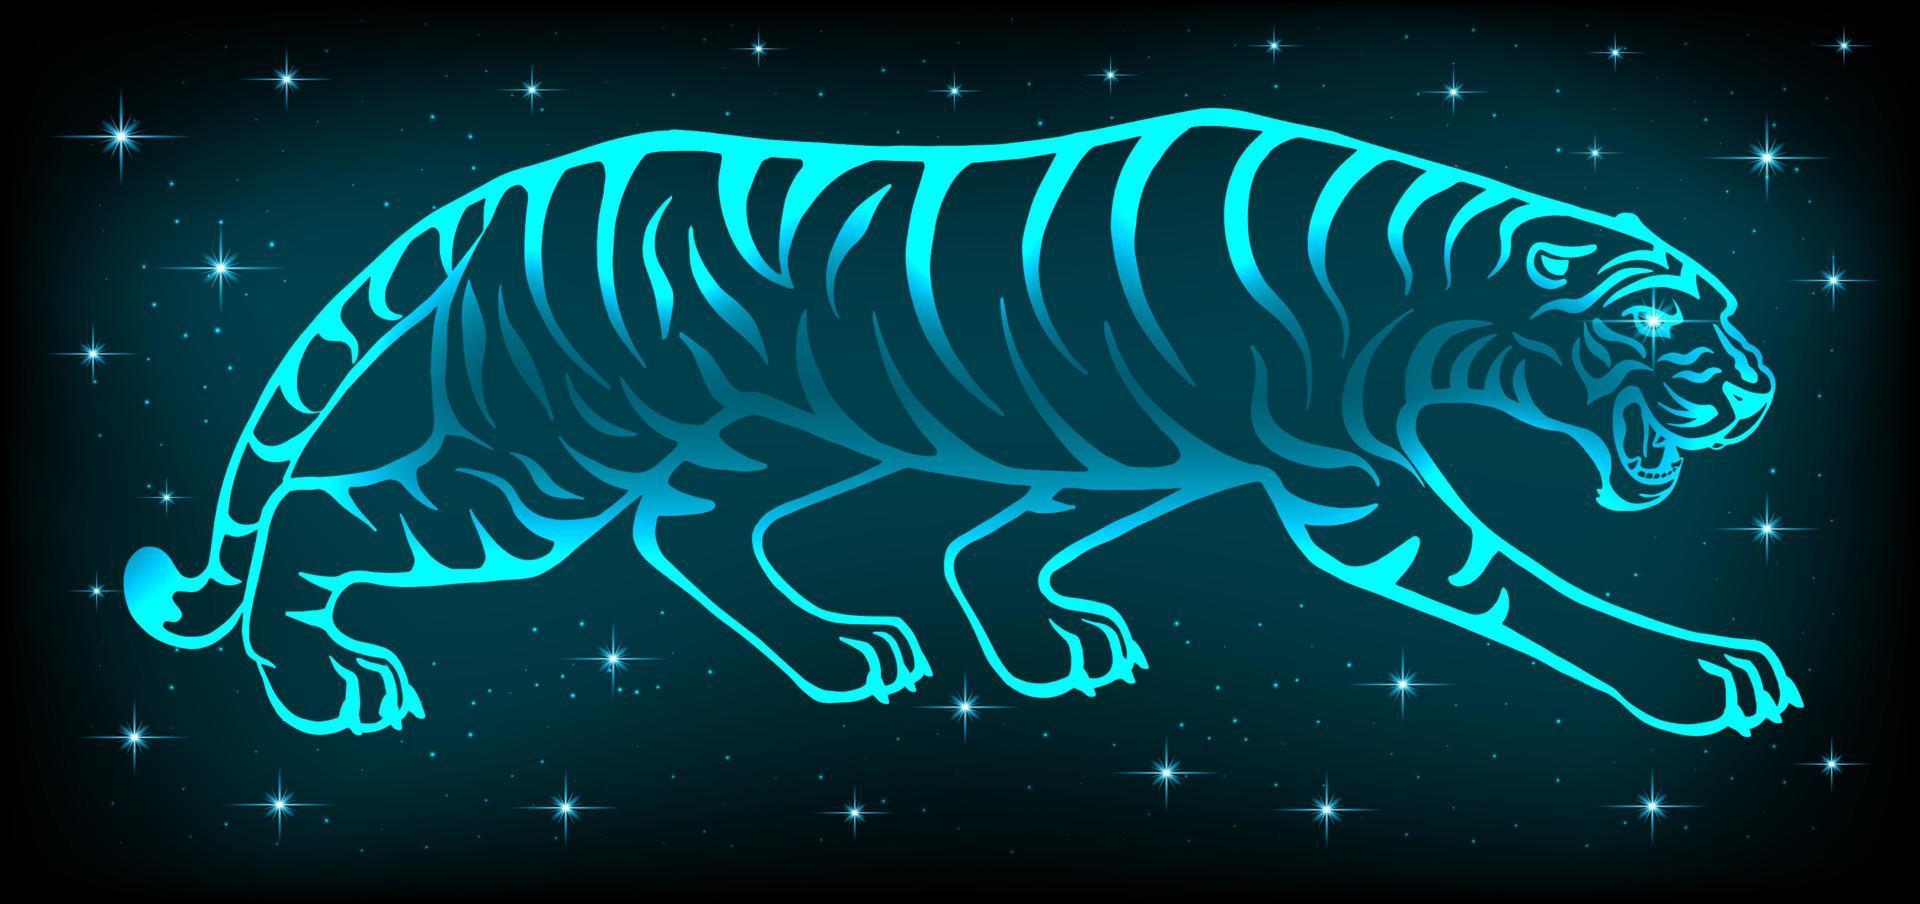 neon tiger 2022. symbol för det nya året enligt den östra kalendern. ljus vilda rovdjur på en mörk bakgrund. för vykort, kalendrar till jul. vektor. vektor